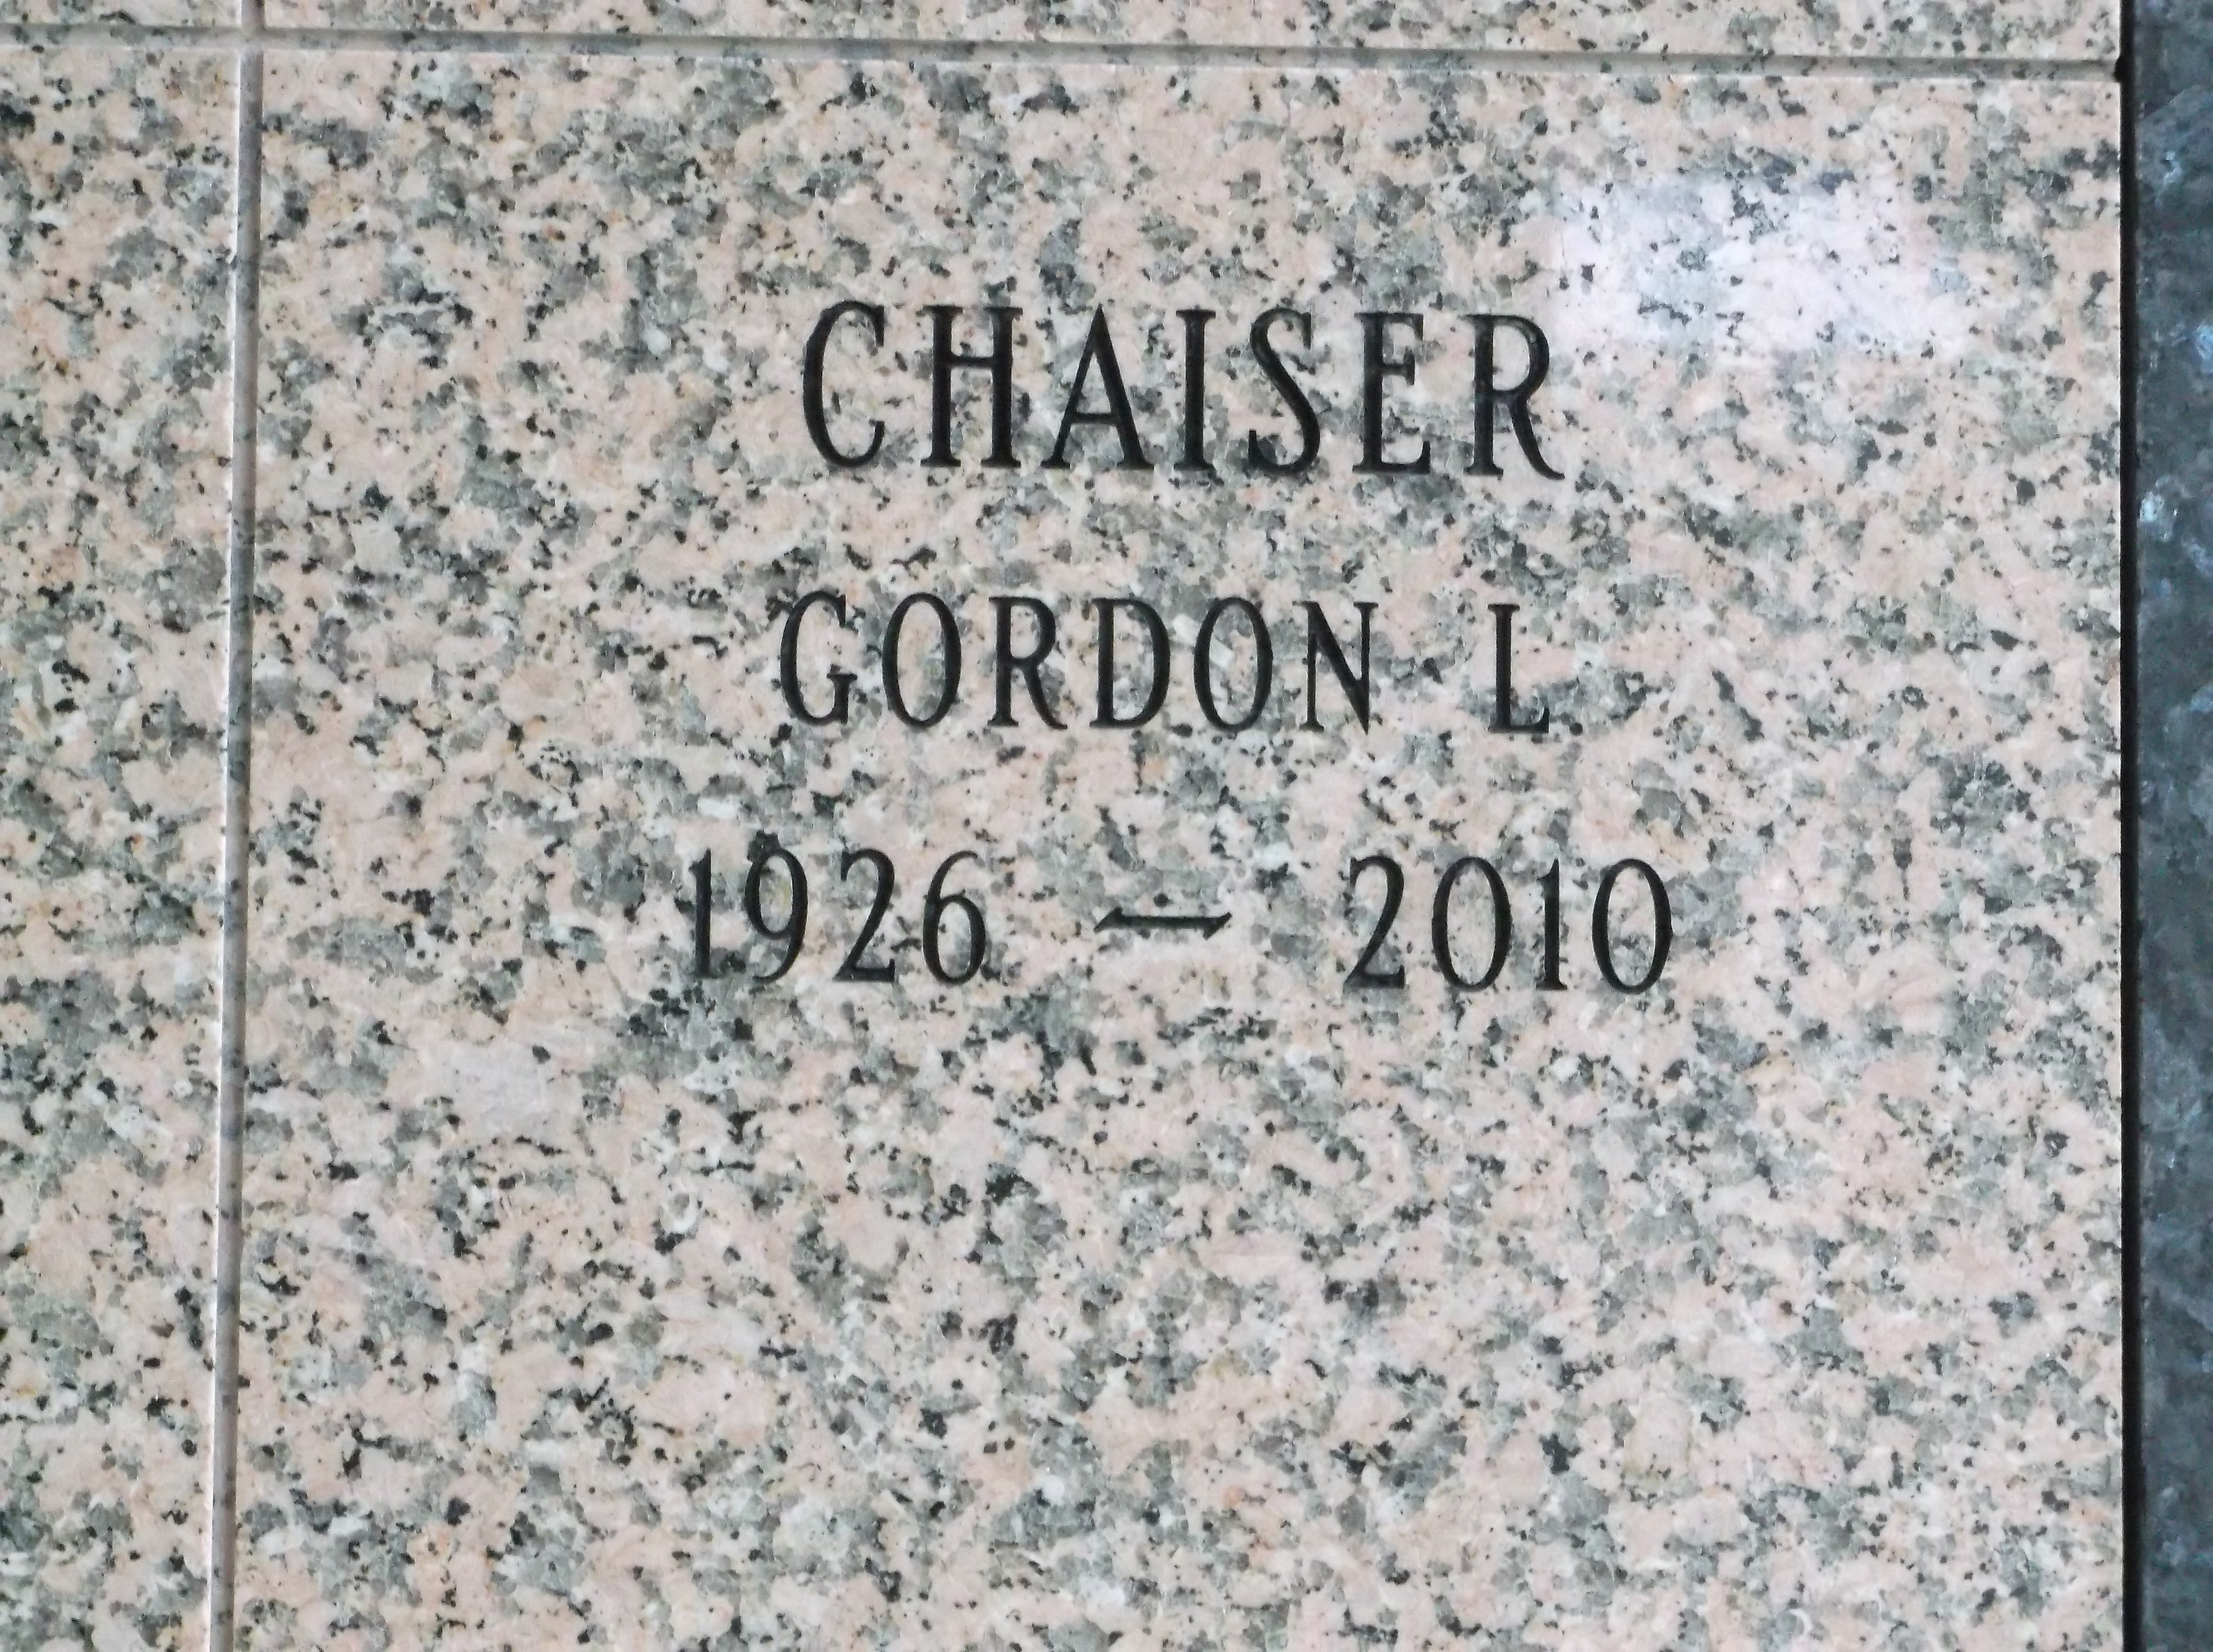 Gordon L Chaiser